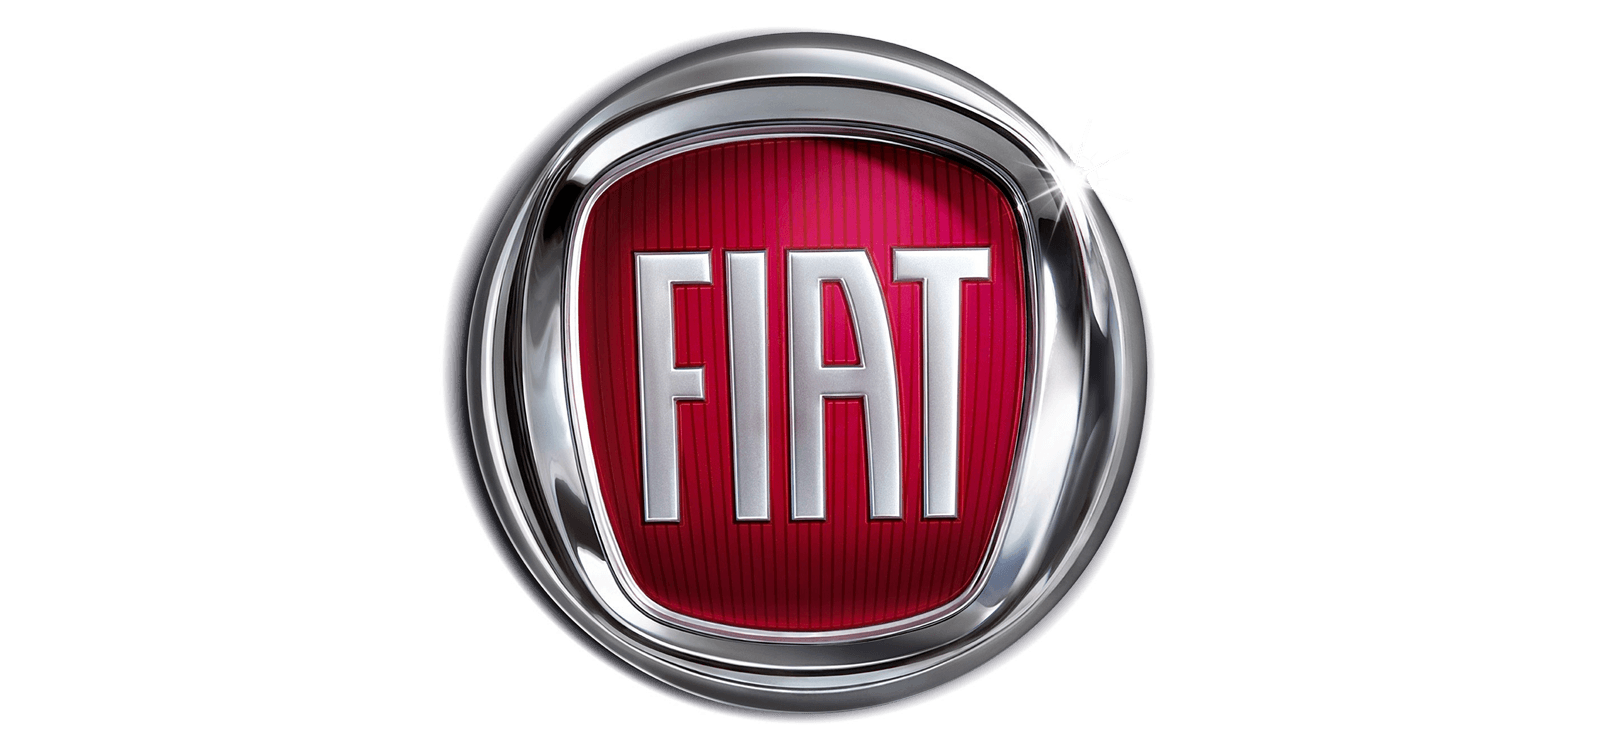 Le Logo - Le logo Fiat | Les marques de voitures